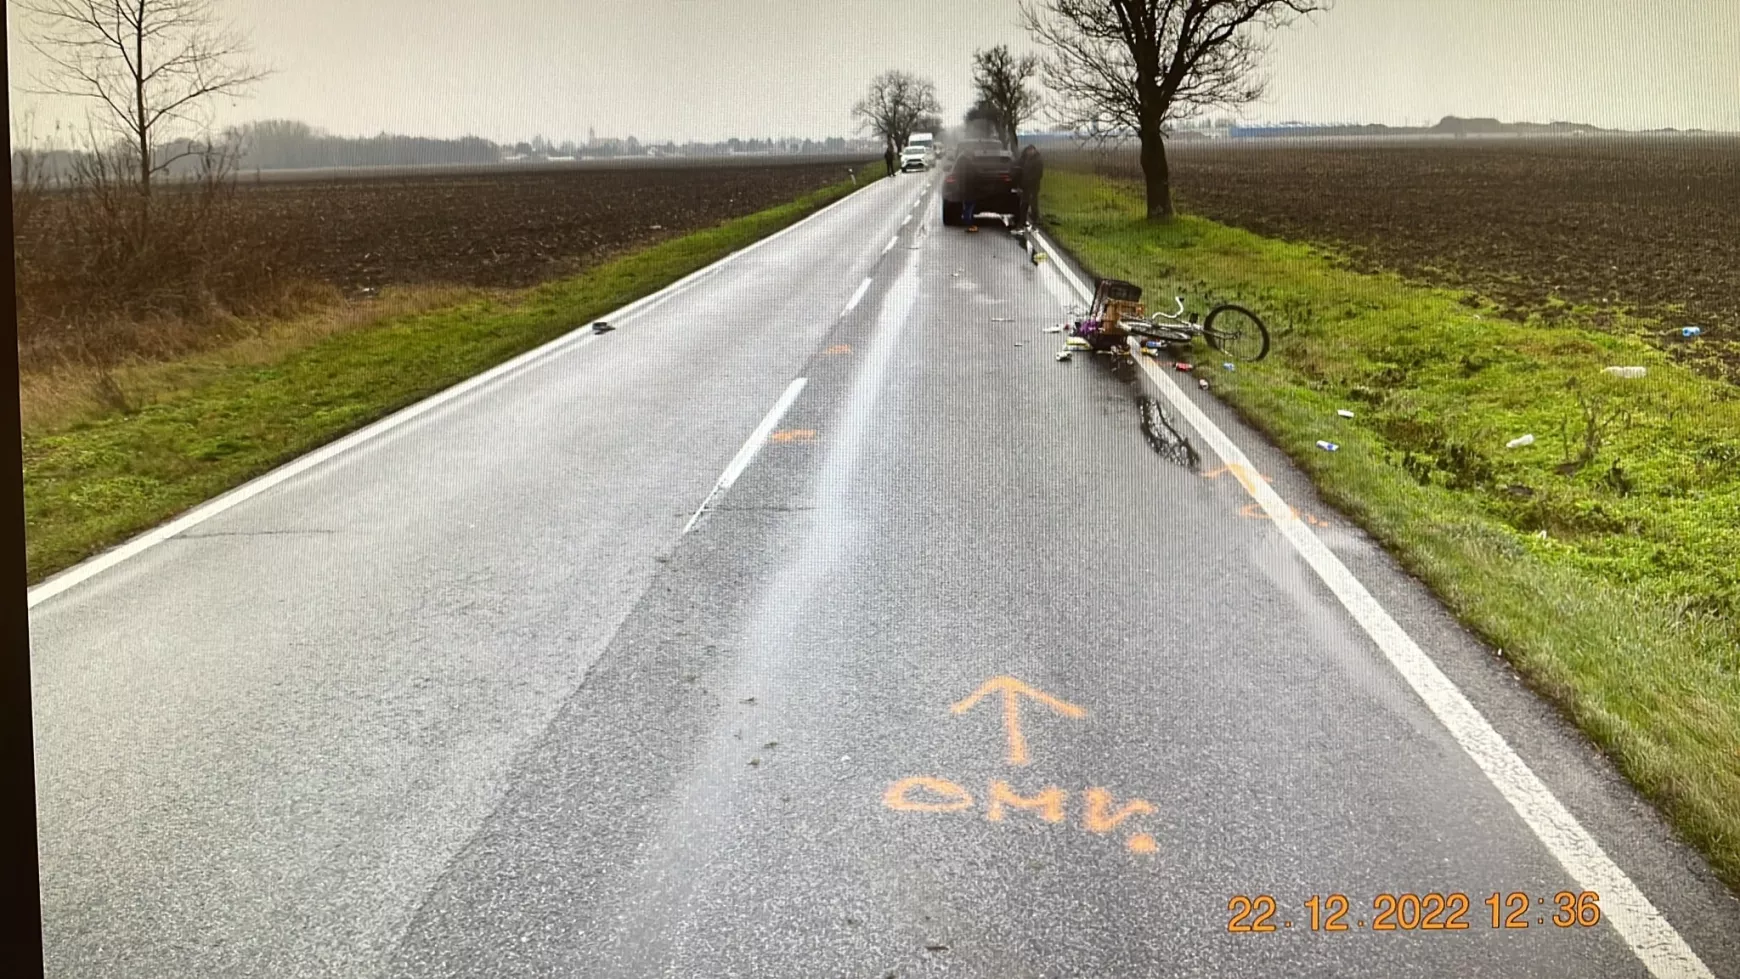 Kerékpáros baleset Taksony és Felsőszeli között